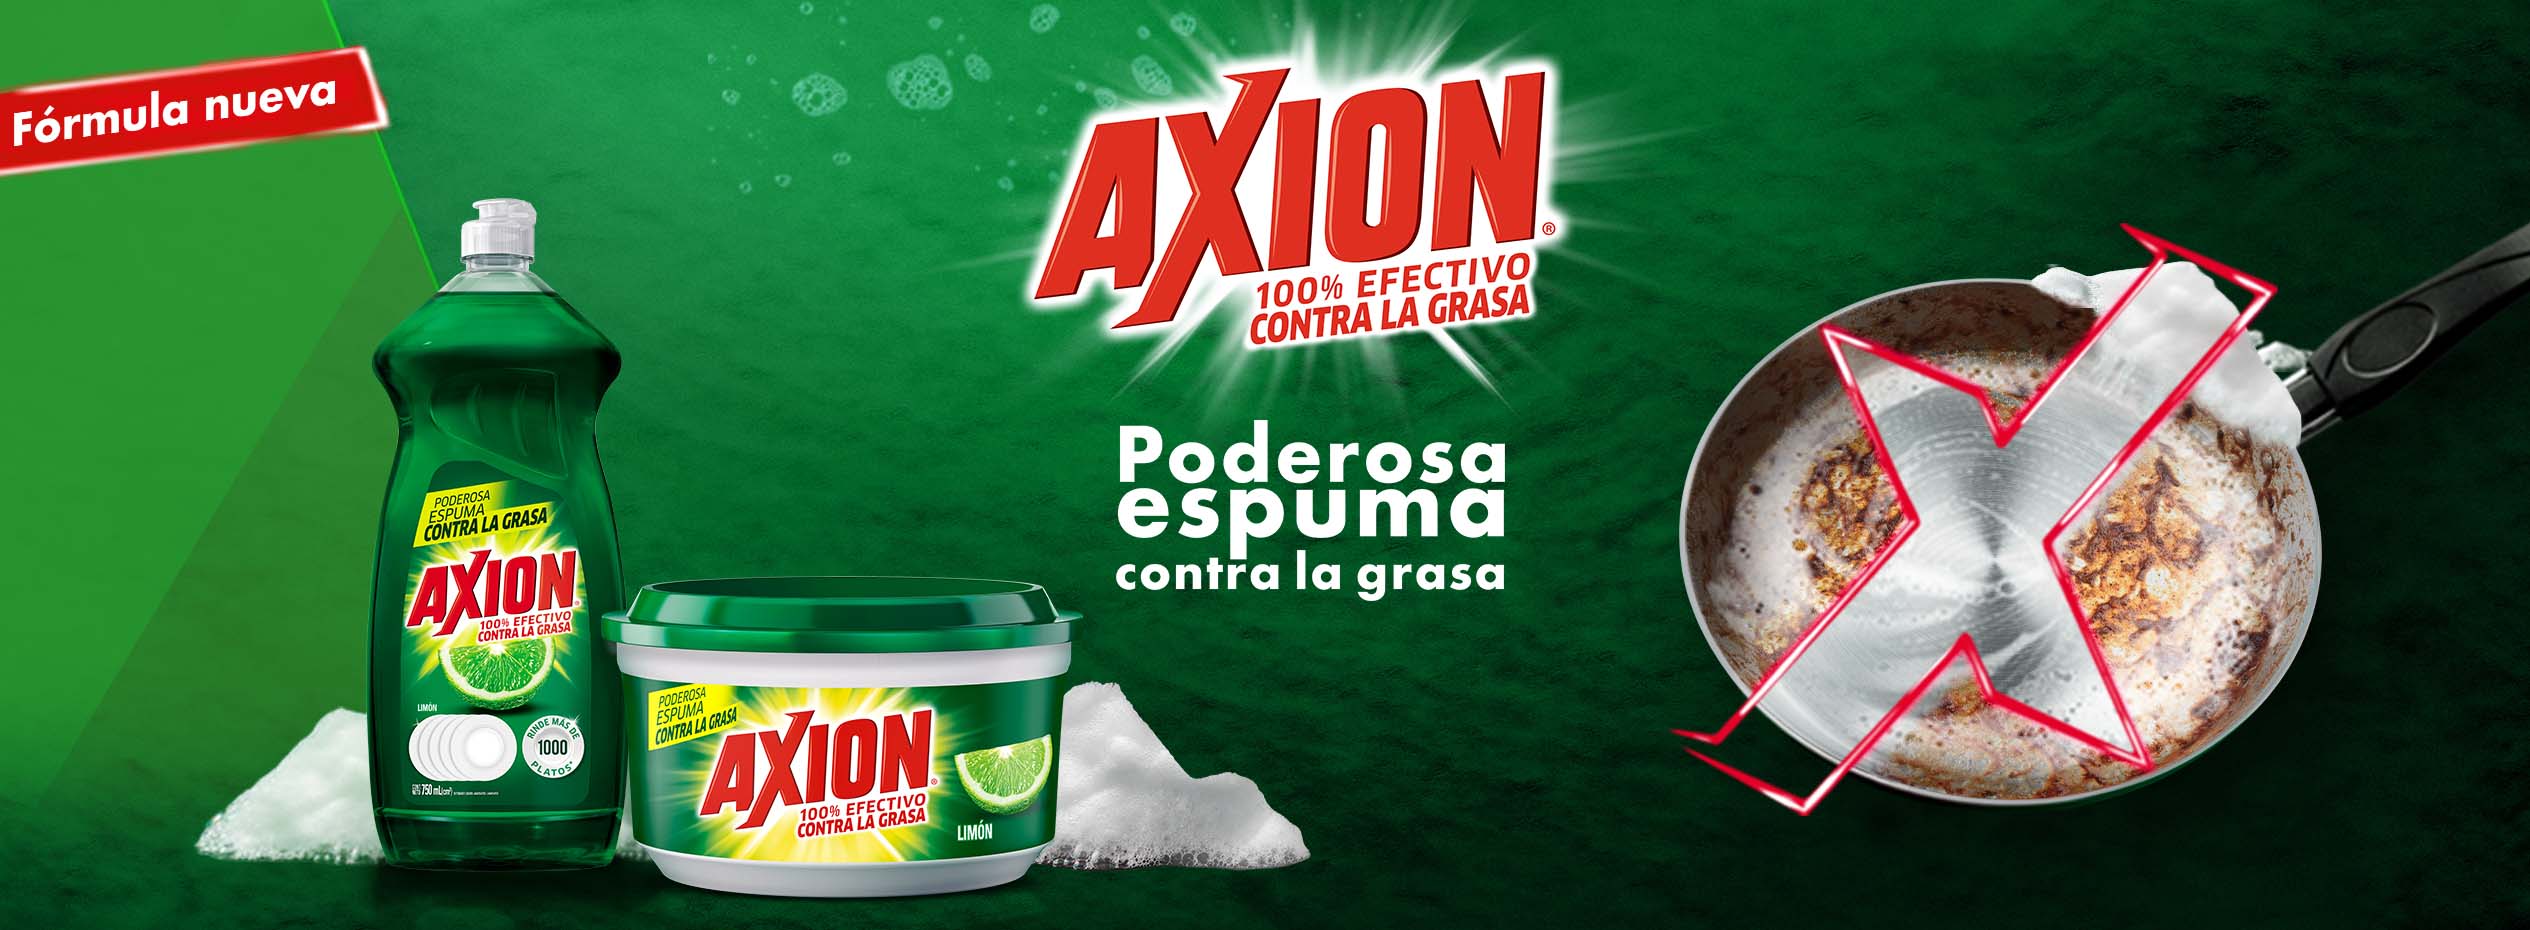 Axion® Complete Carbón Activado. 100% efectivo arrancagrasa. Arranca olores. Único con carbón activado. Elimina 99.99% de las bacterias